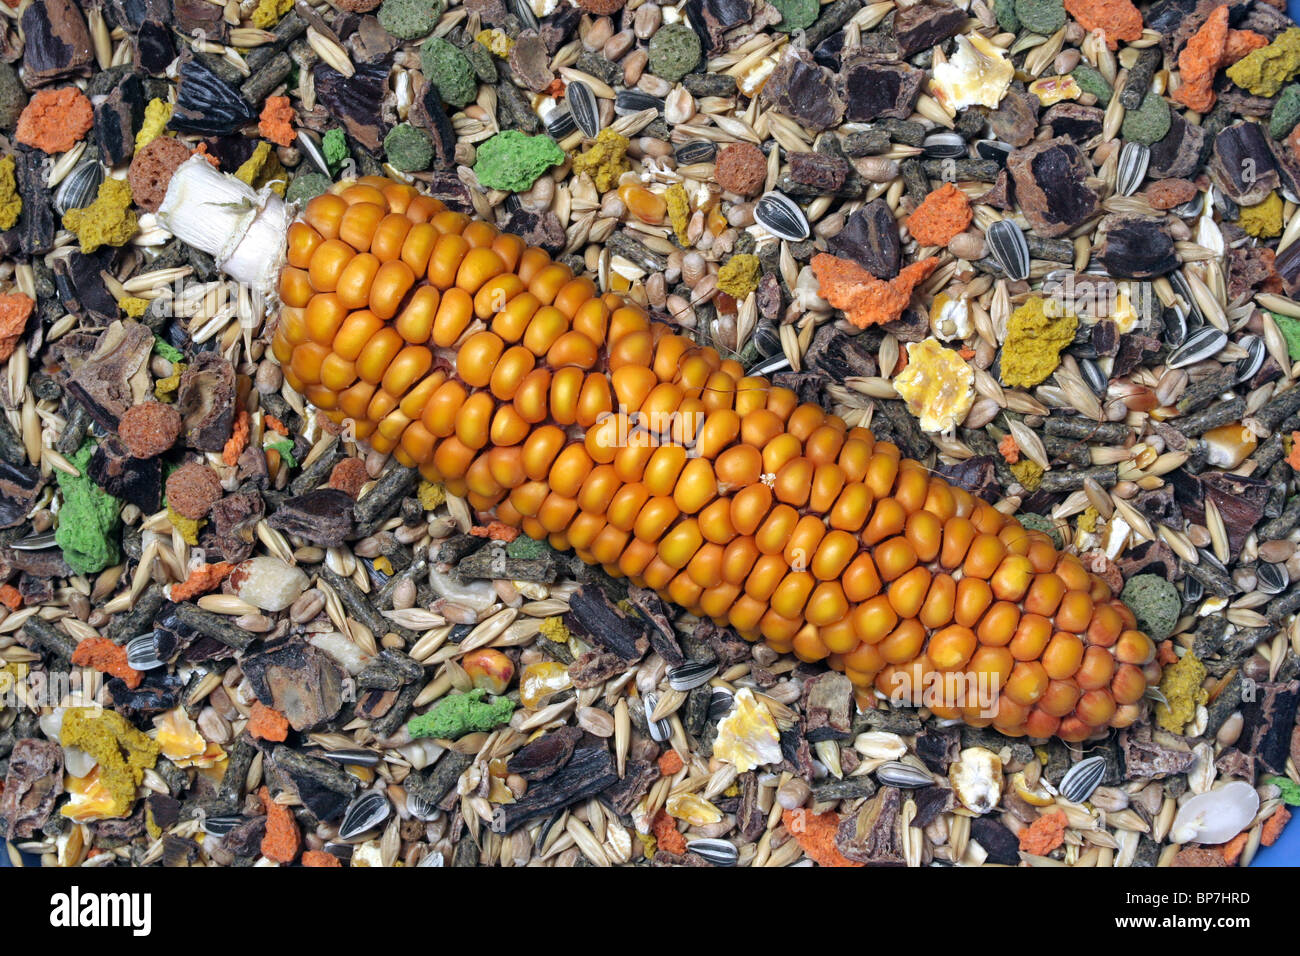 Le maïs, le maïs (Zea mays). S/N situé sur l'alimentation des rongeurs avec tournesol, céréales, granulés multicolores et de maïs en grains. Banque D'Images